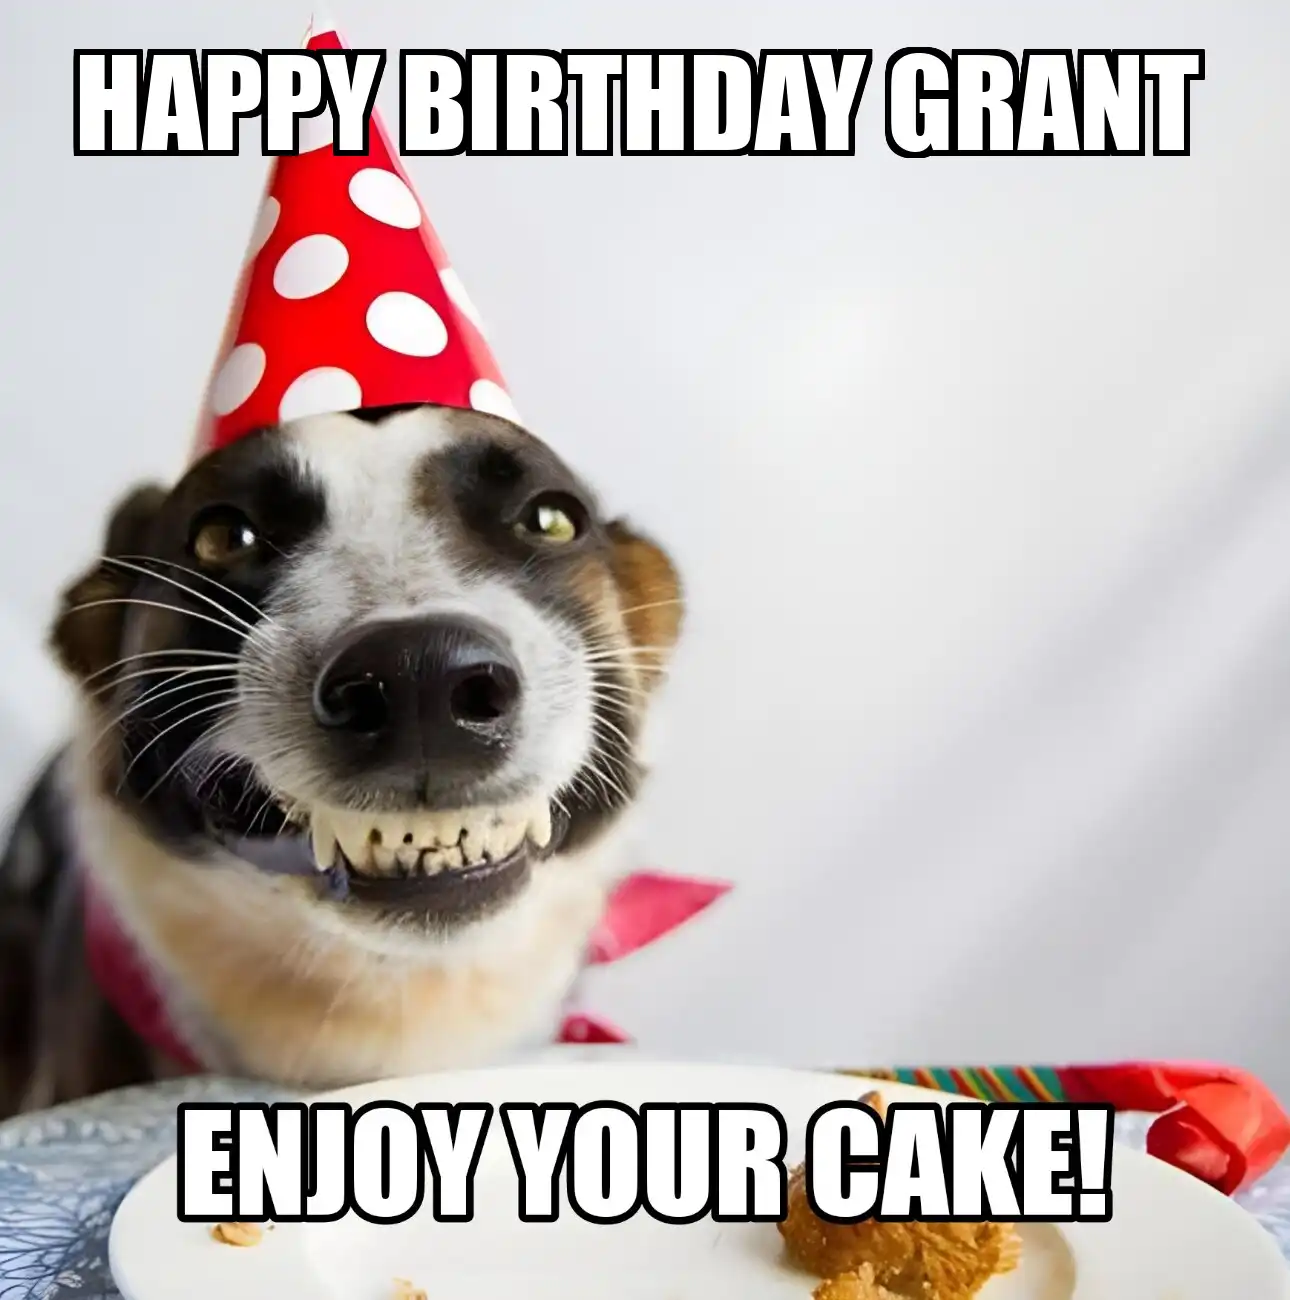 Happy Birthday Grant Enjoy Your Cake Dog Meme